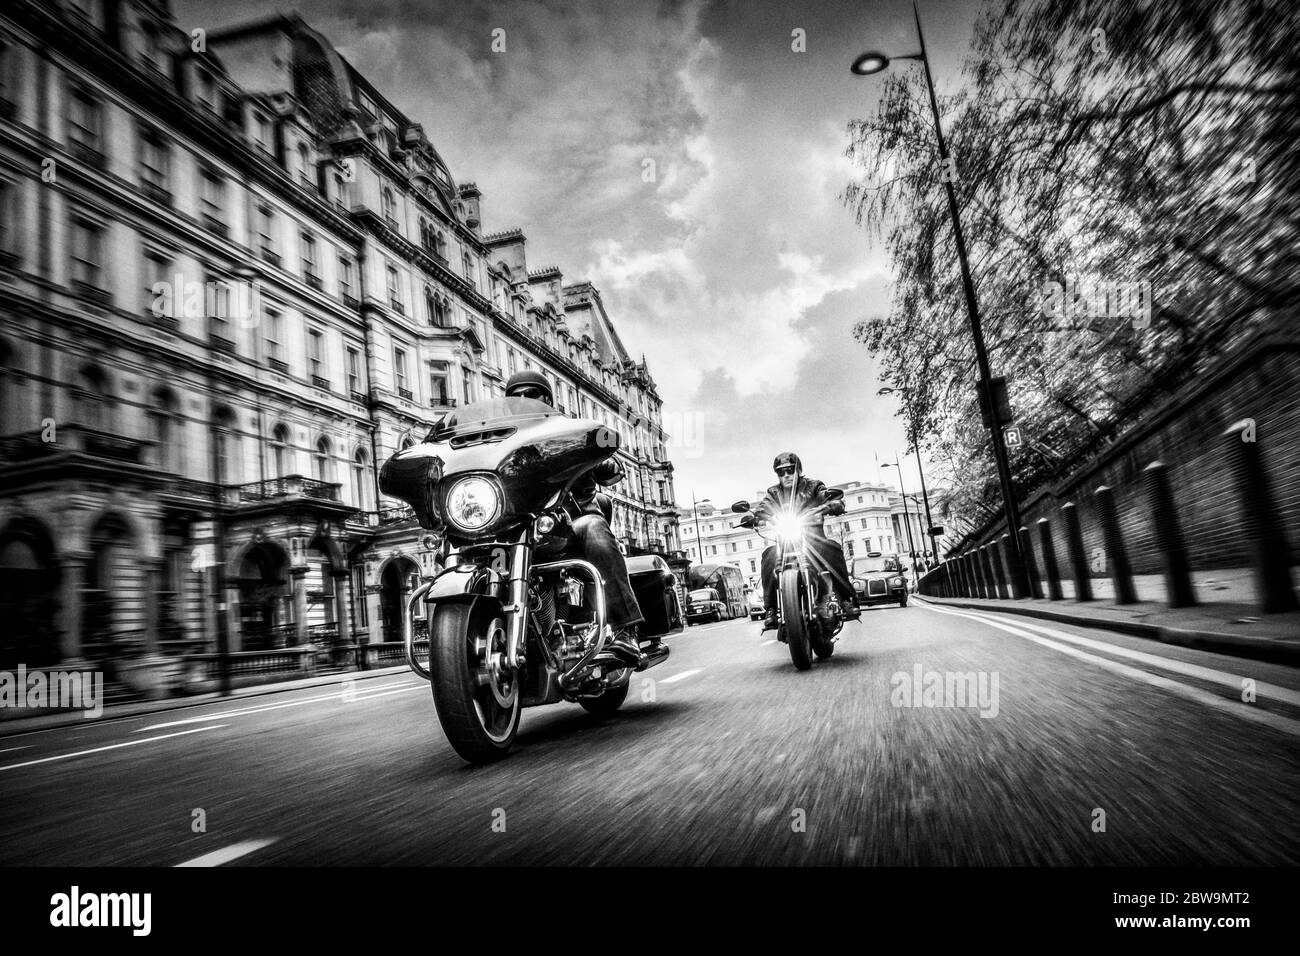 Royaume-Uni, Londres, motocyclistes sur la rue de la ville Banque D'Images